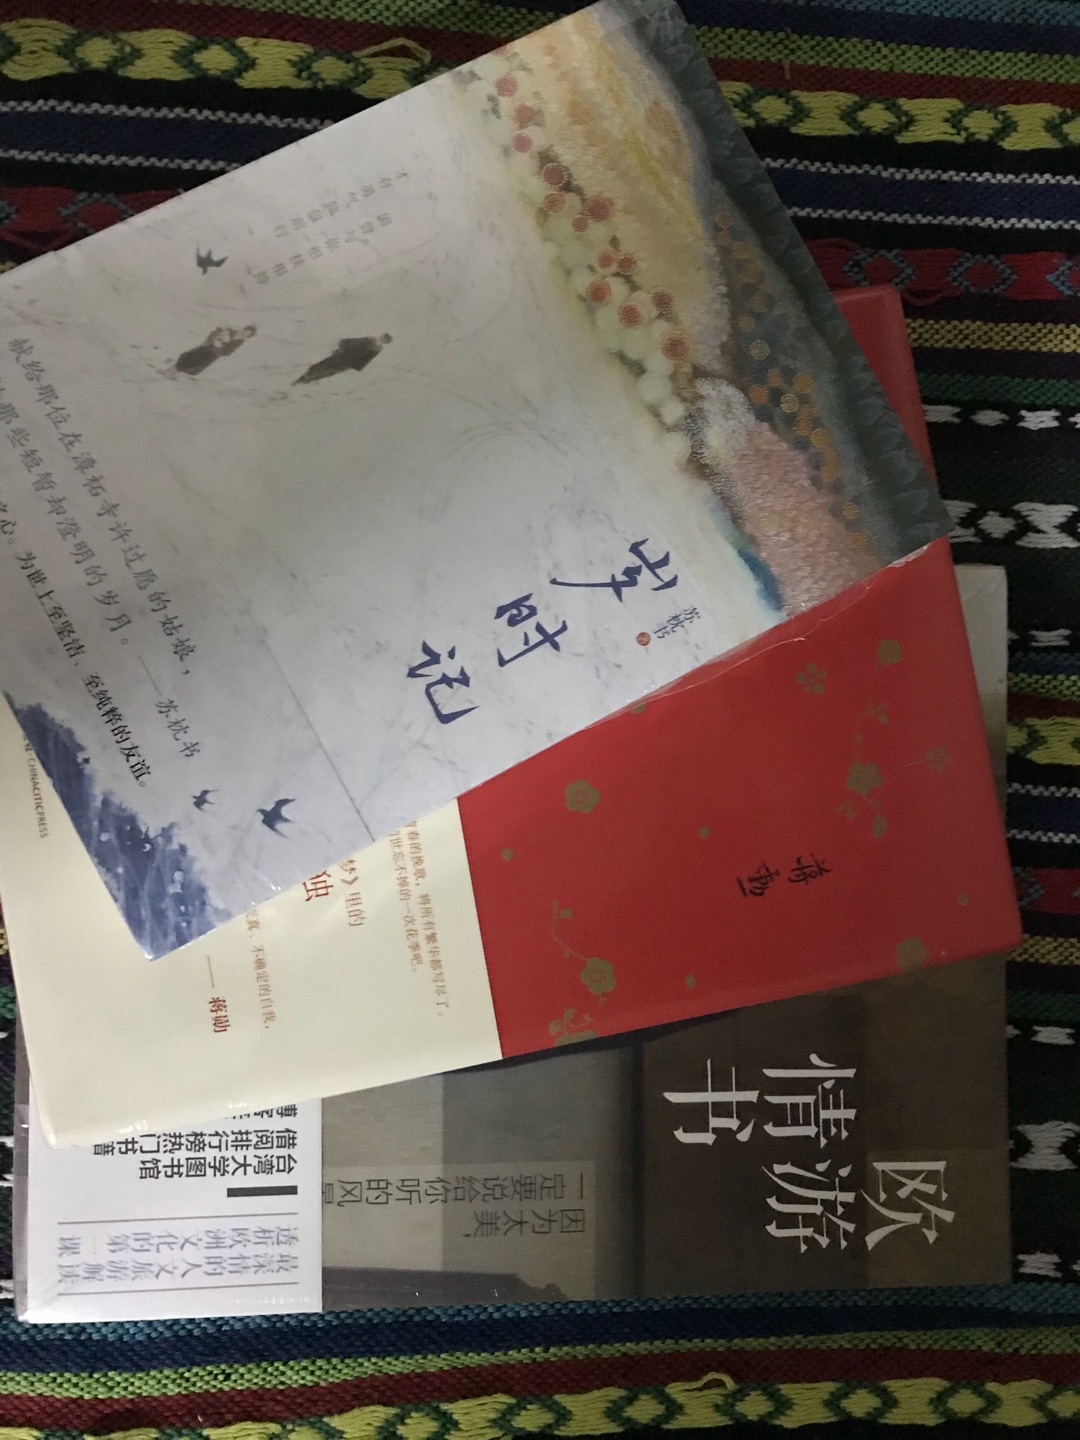 看过松子落，了解了这位独特的女子的京都生活，以及微博上的日常点滴，再看看这本书里的故事，会有另一翻收获